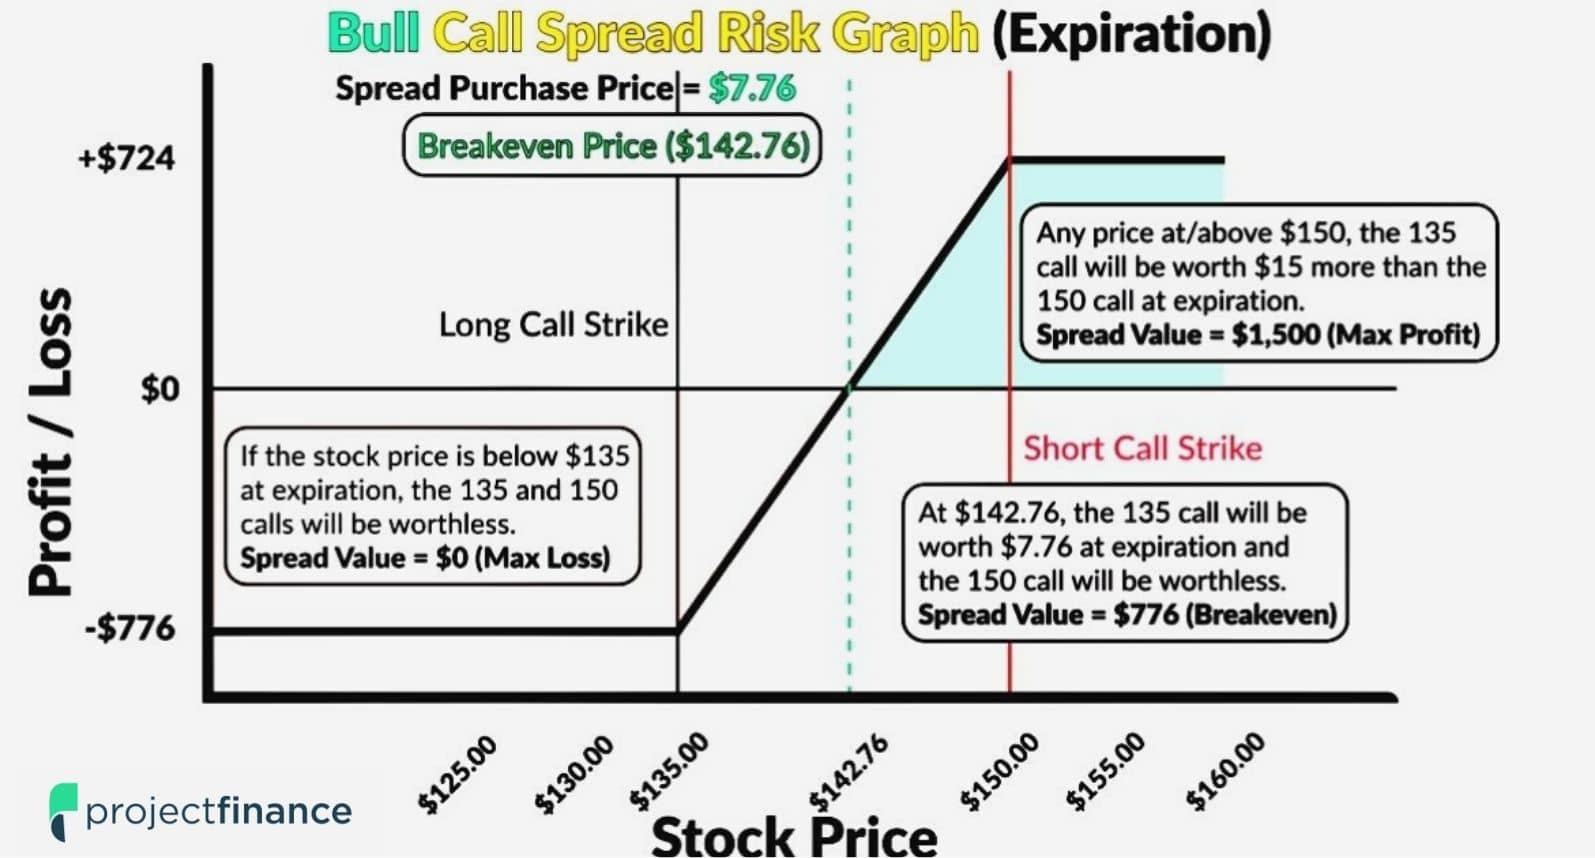 Bull Call Spread Risk Graph.